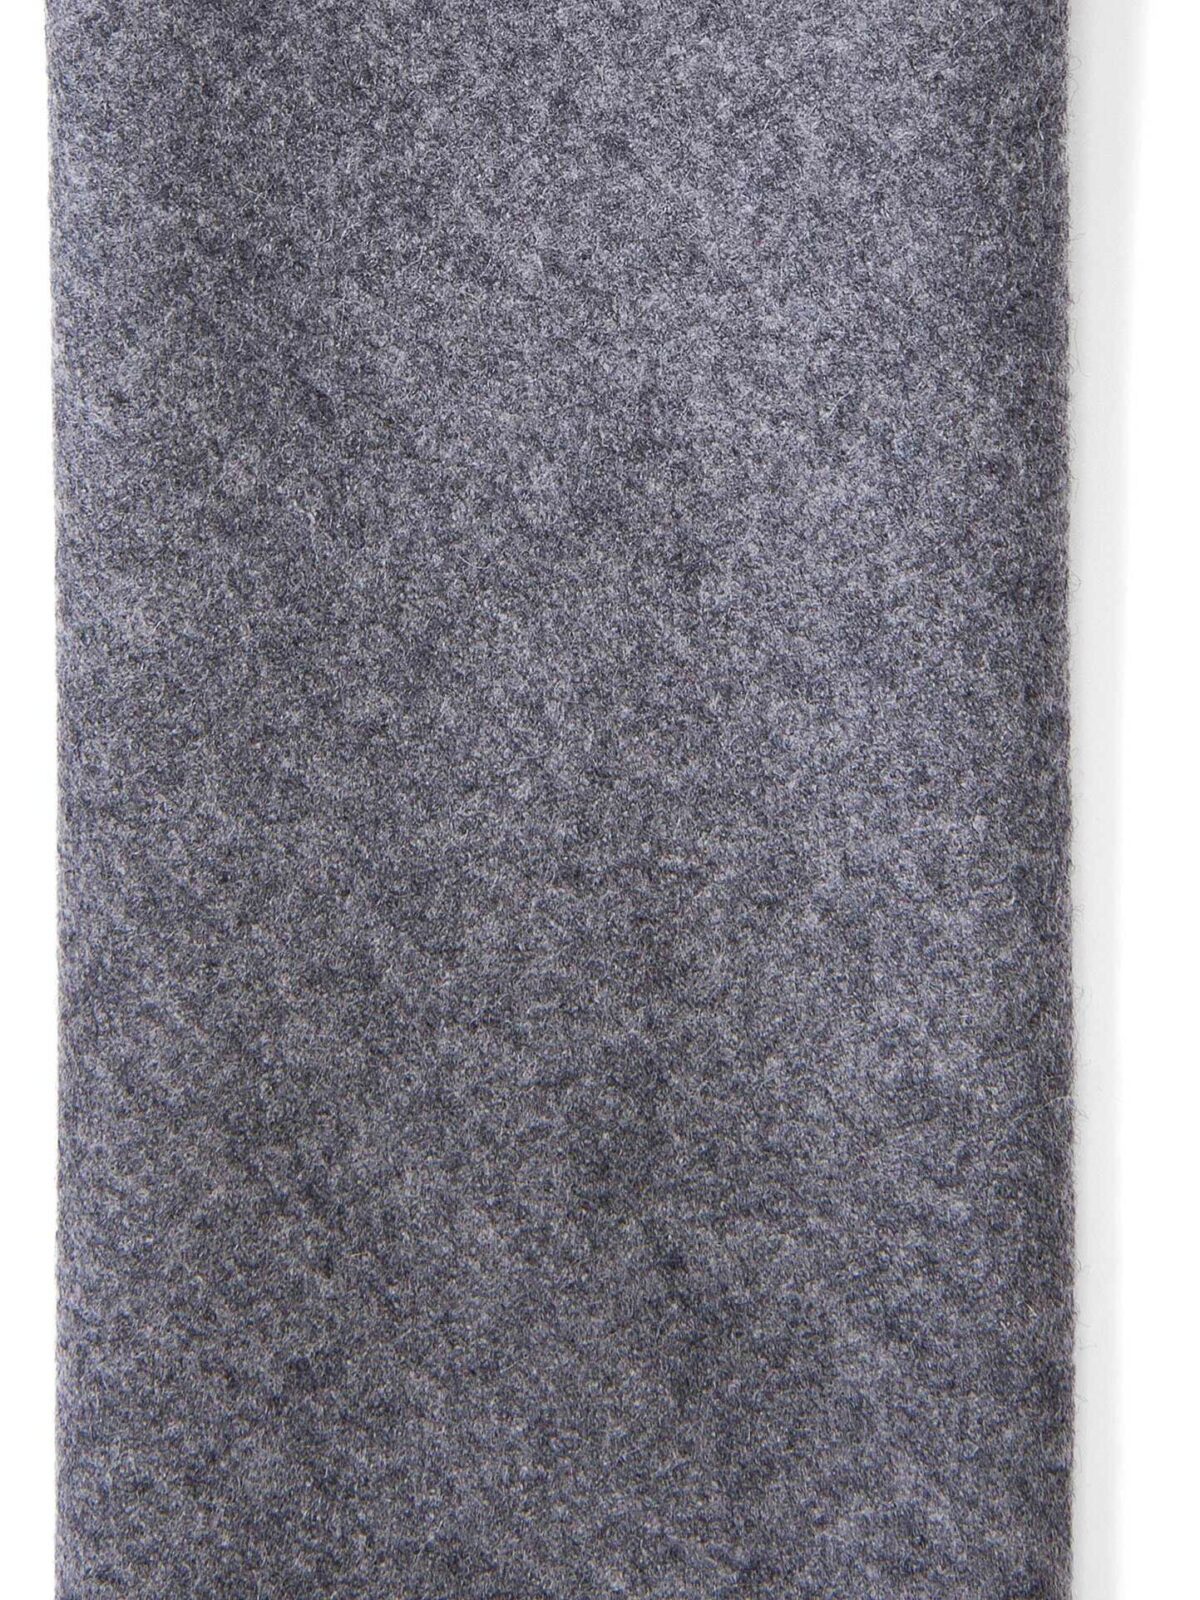 Corvara Grey Frayed Wool Tie